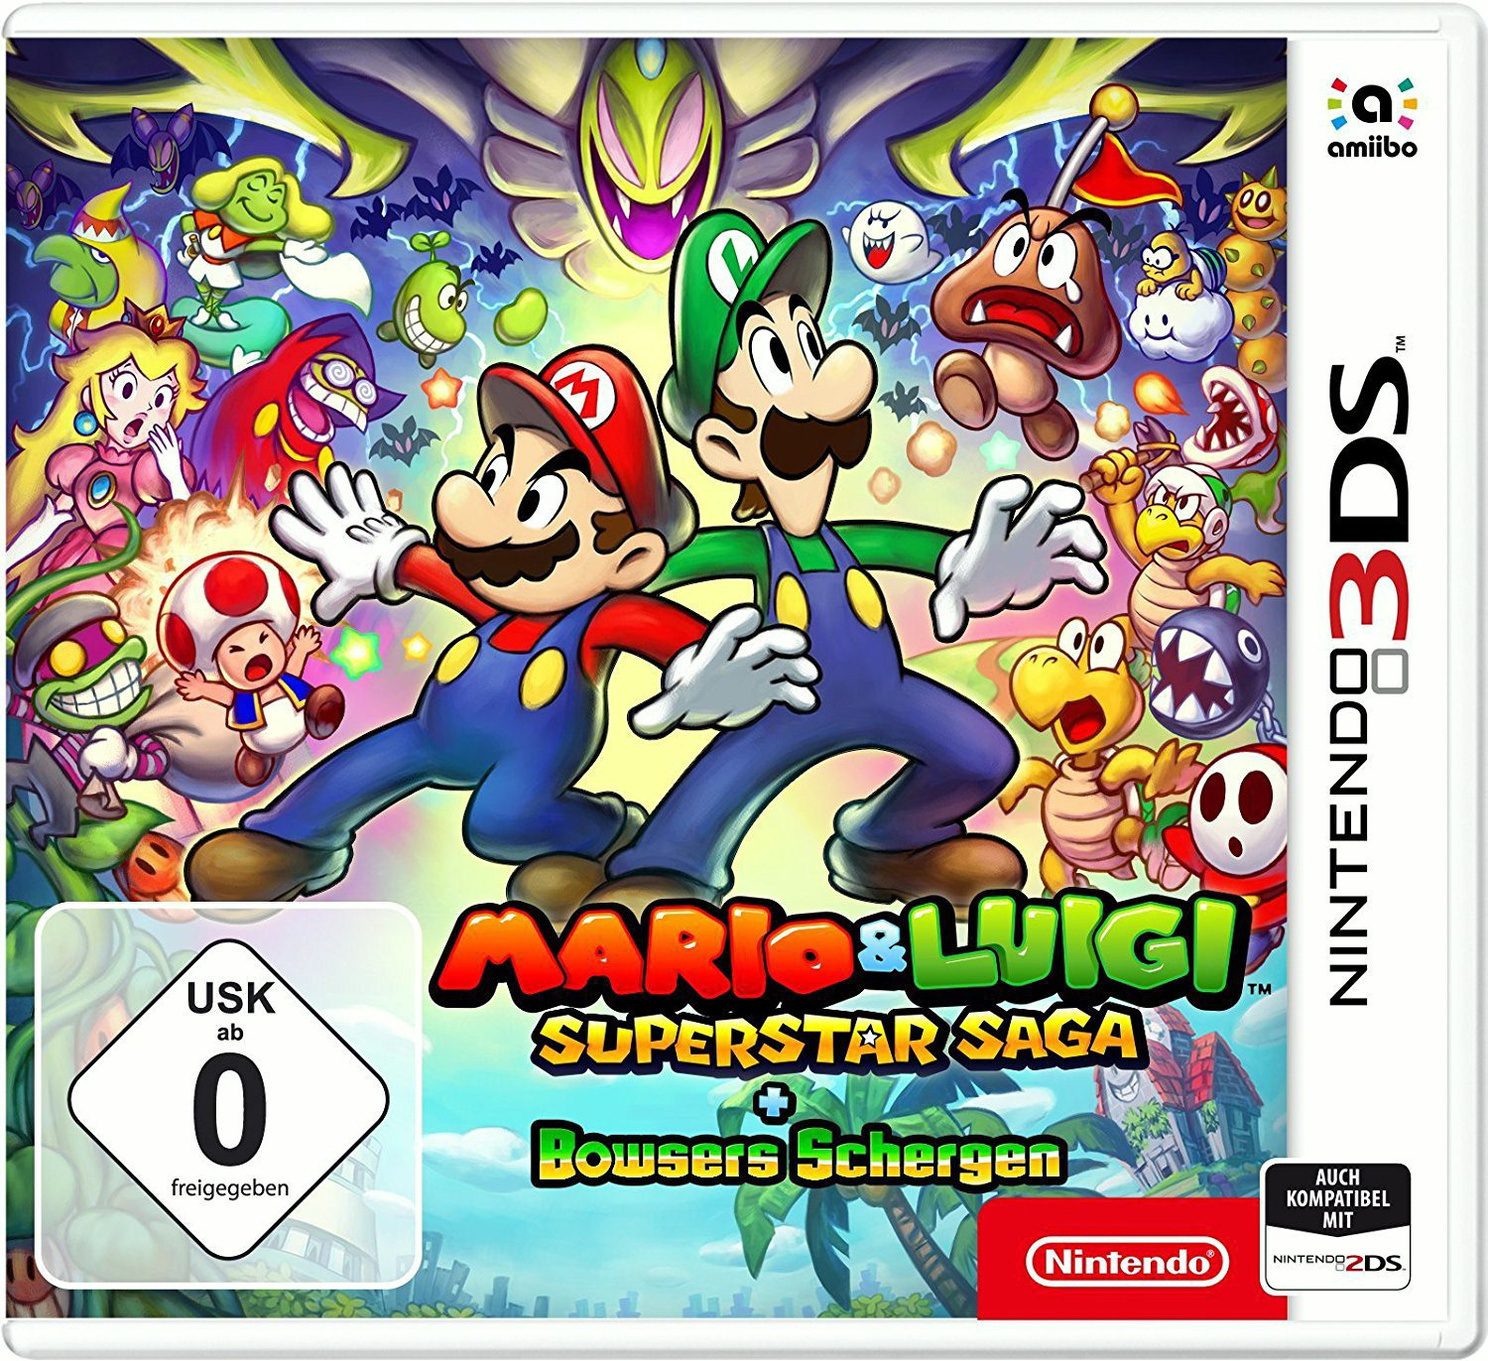 [New - Luigi: Nintendo Saga + Bowsers Superstar 3DS] Schergen Mario &